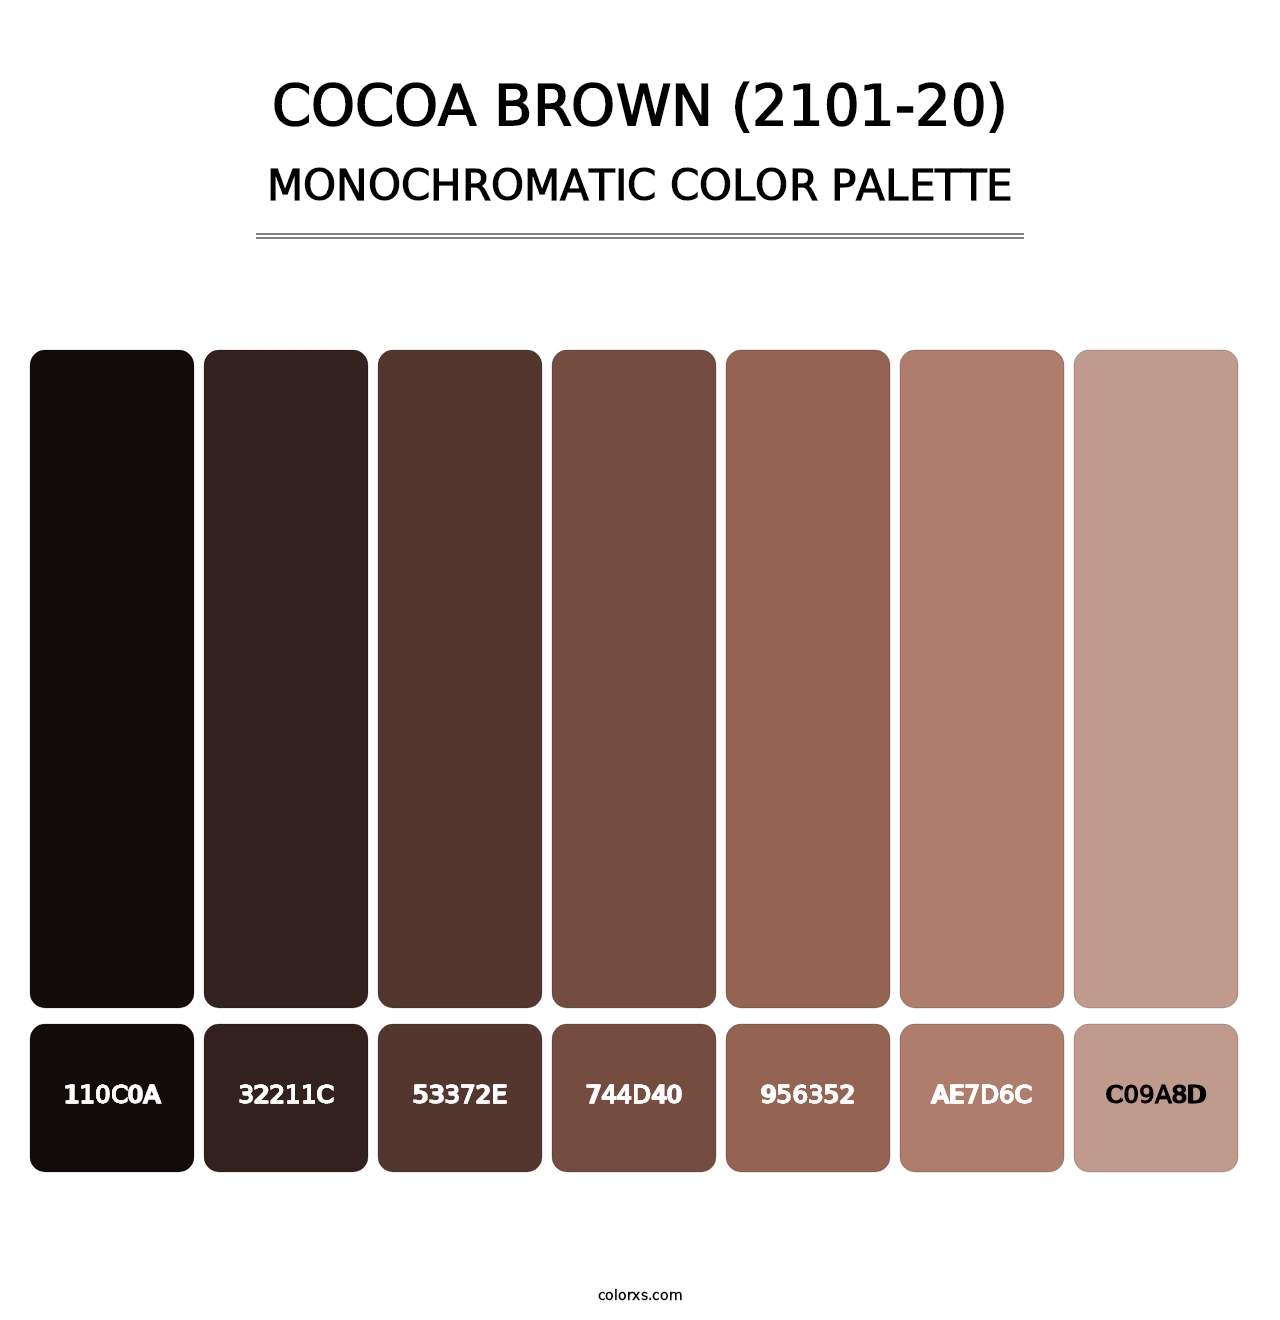 Cocoa Brown (2101-20) - Monochromatic Color Palette